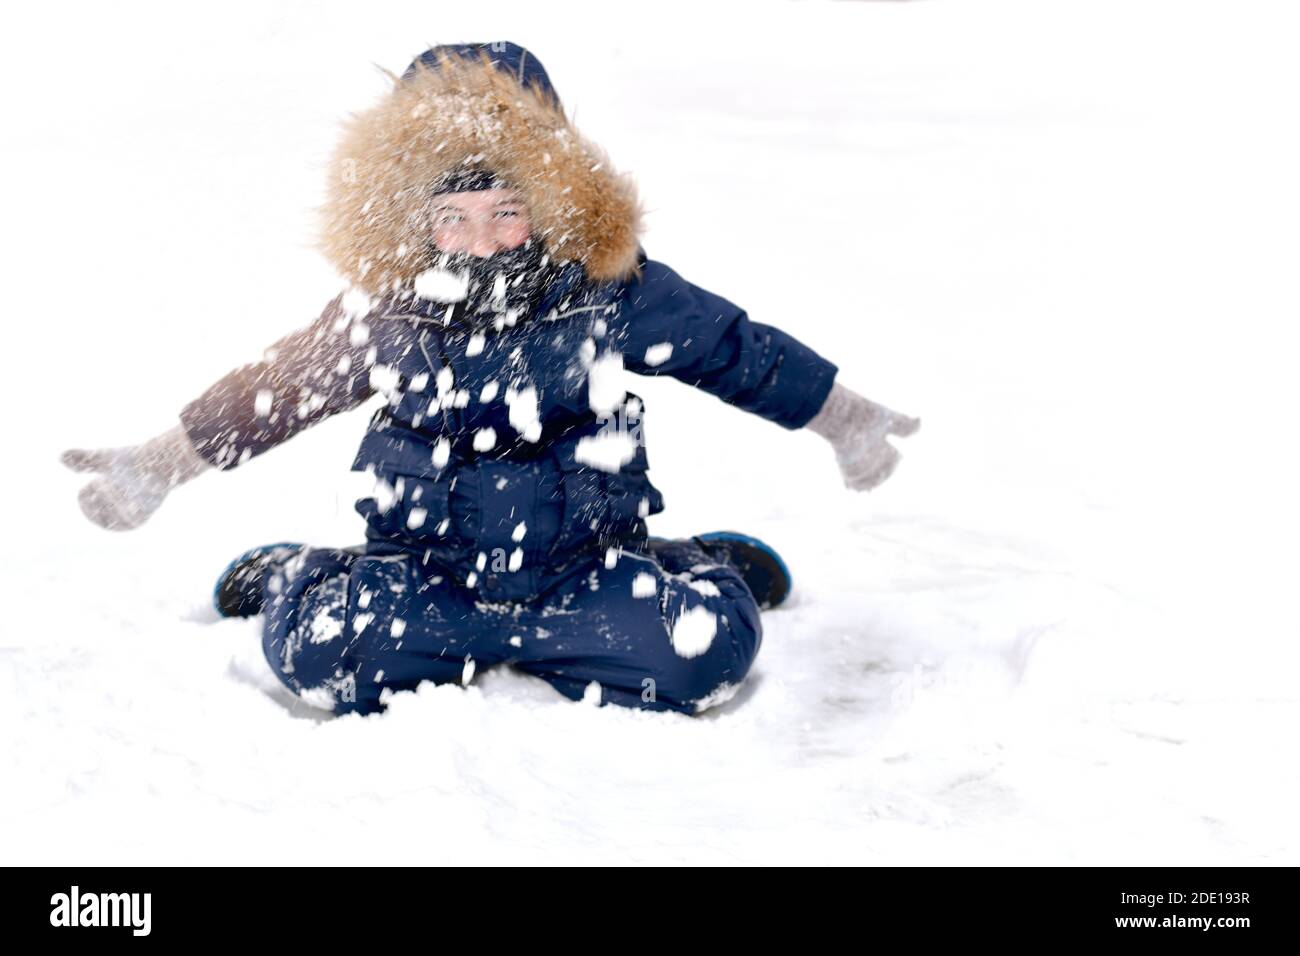 Das Kind ist warm gekleidet, mit einer Pelzhaube. An einem frostigen Wintertag sitzend, mit den Händen in Fäustlingen, wirft er viele gesammelten Schnee hoch, sc Stockfoto